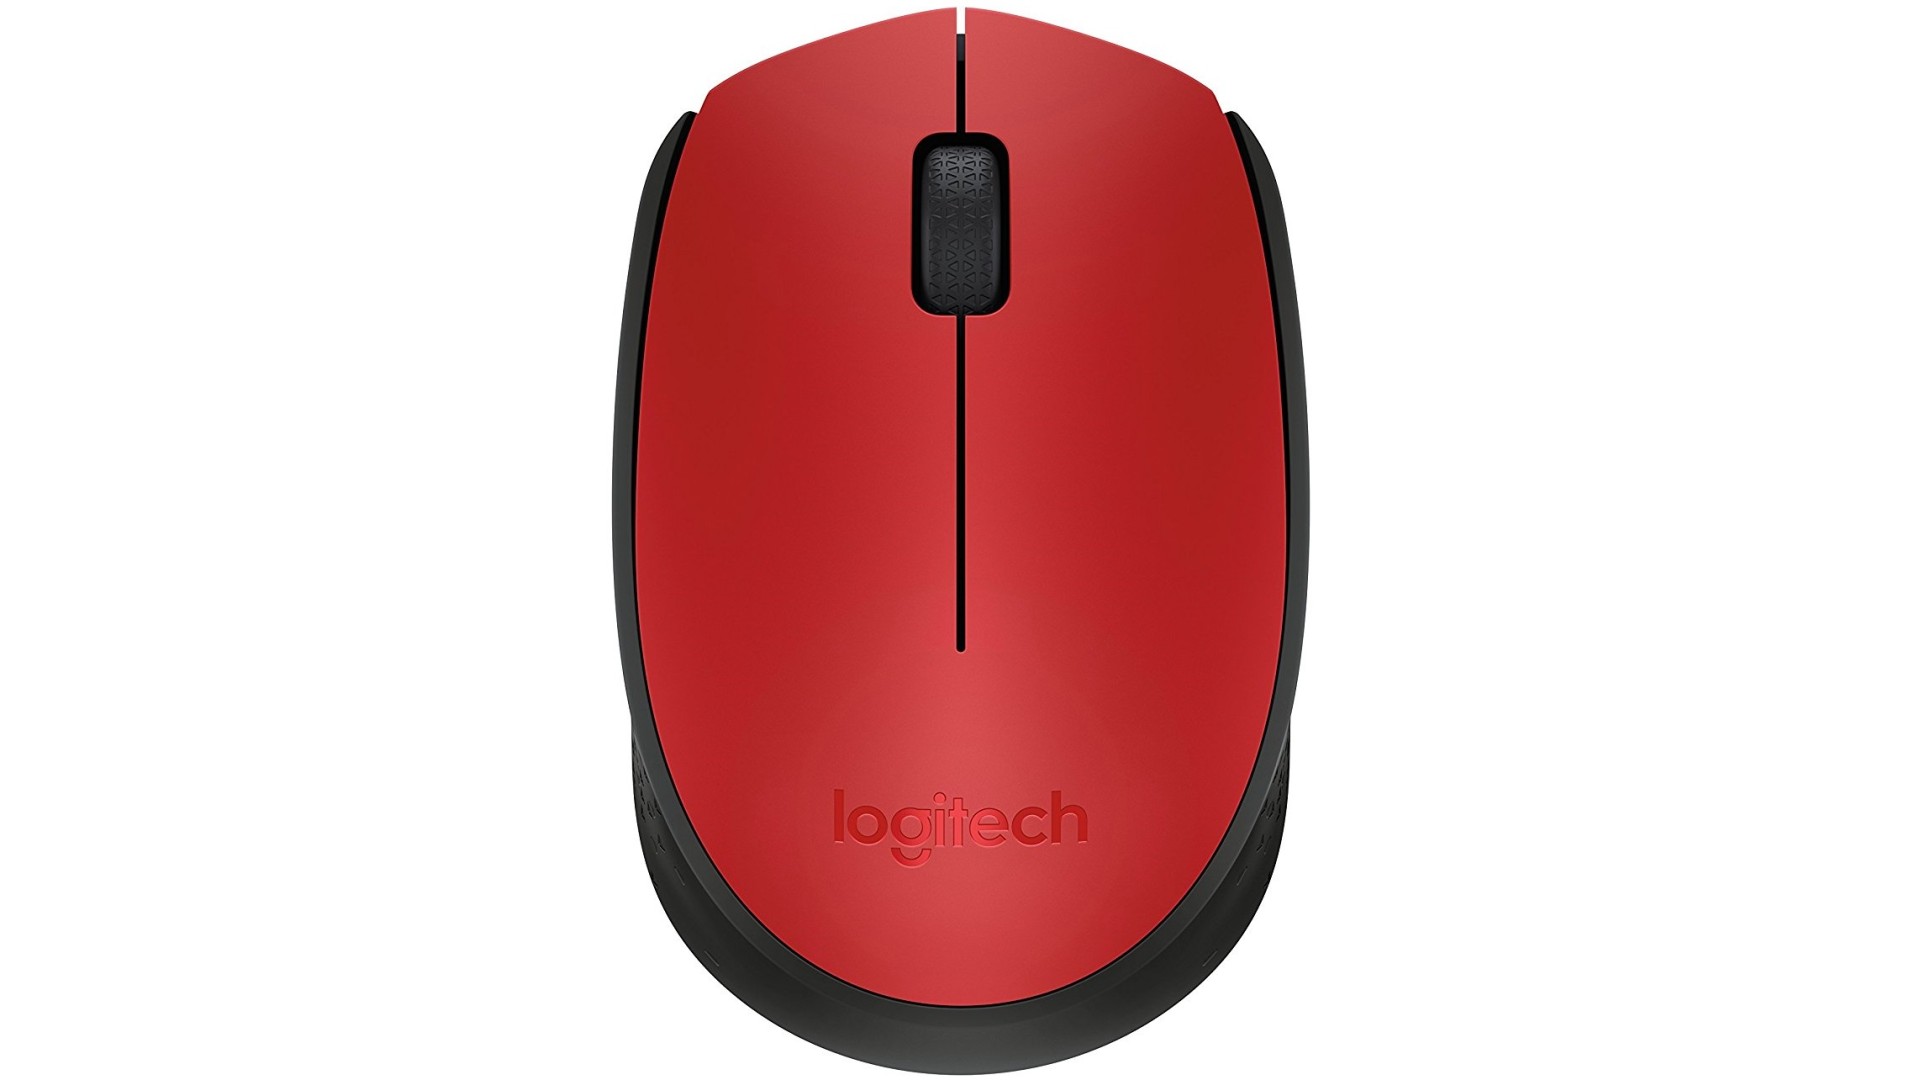 მაუსი Logitech /Wireless Mouse M171 RED  910-004641